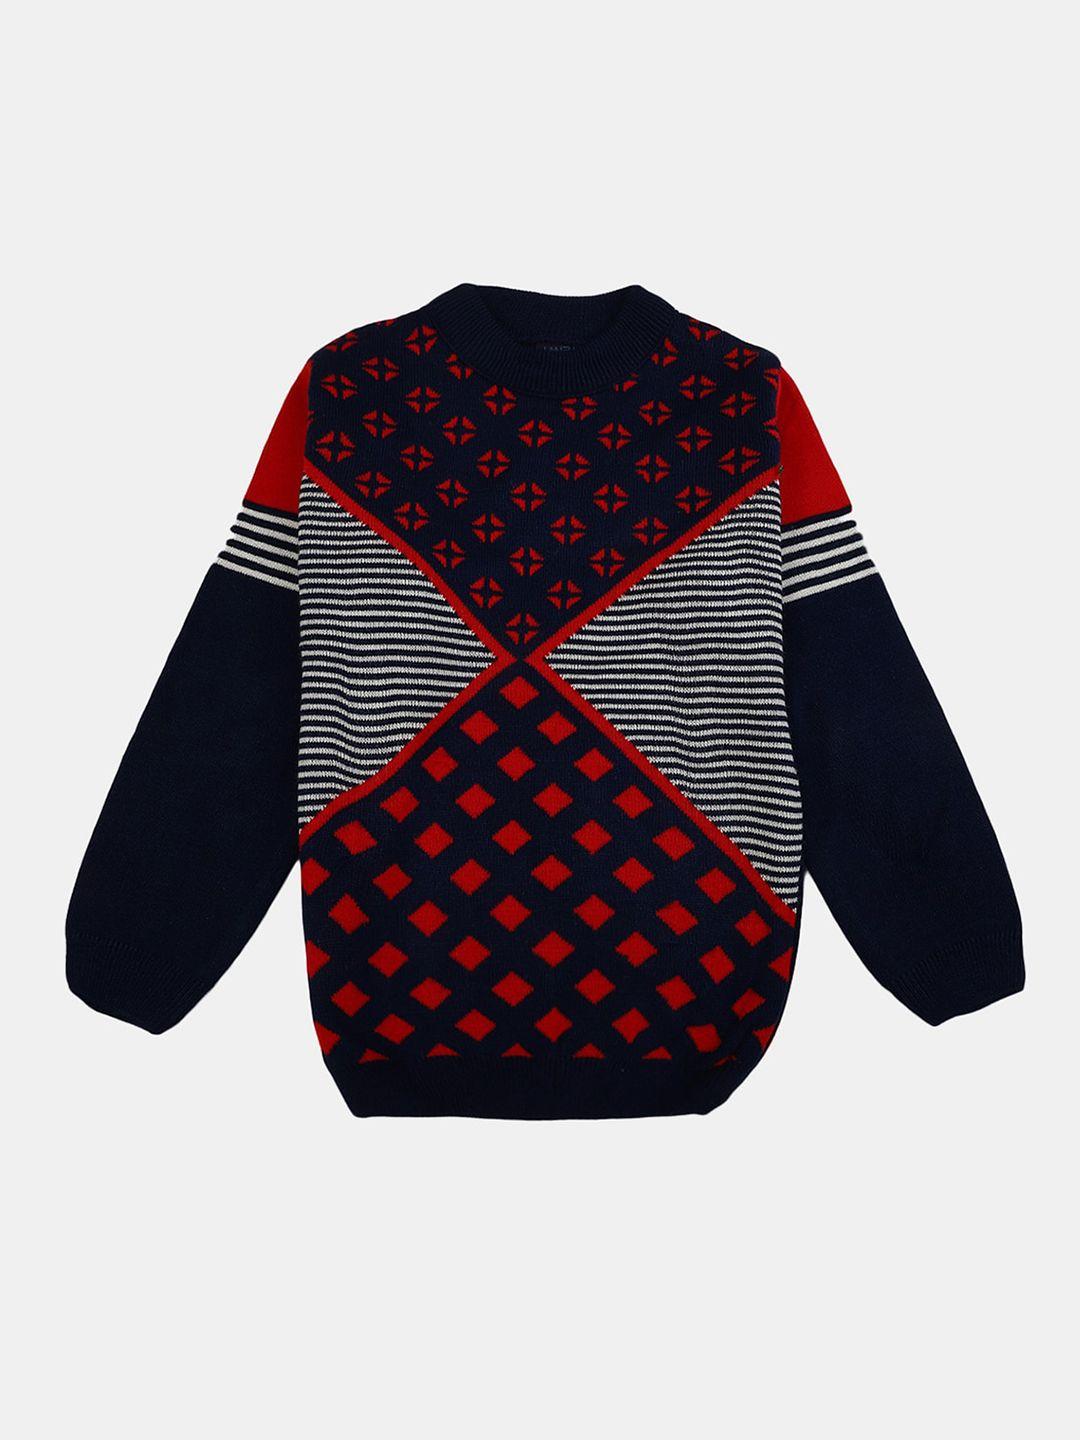 v-mart boys geometric printed sweatshirt